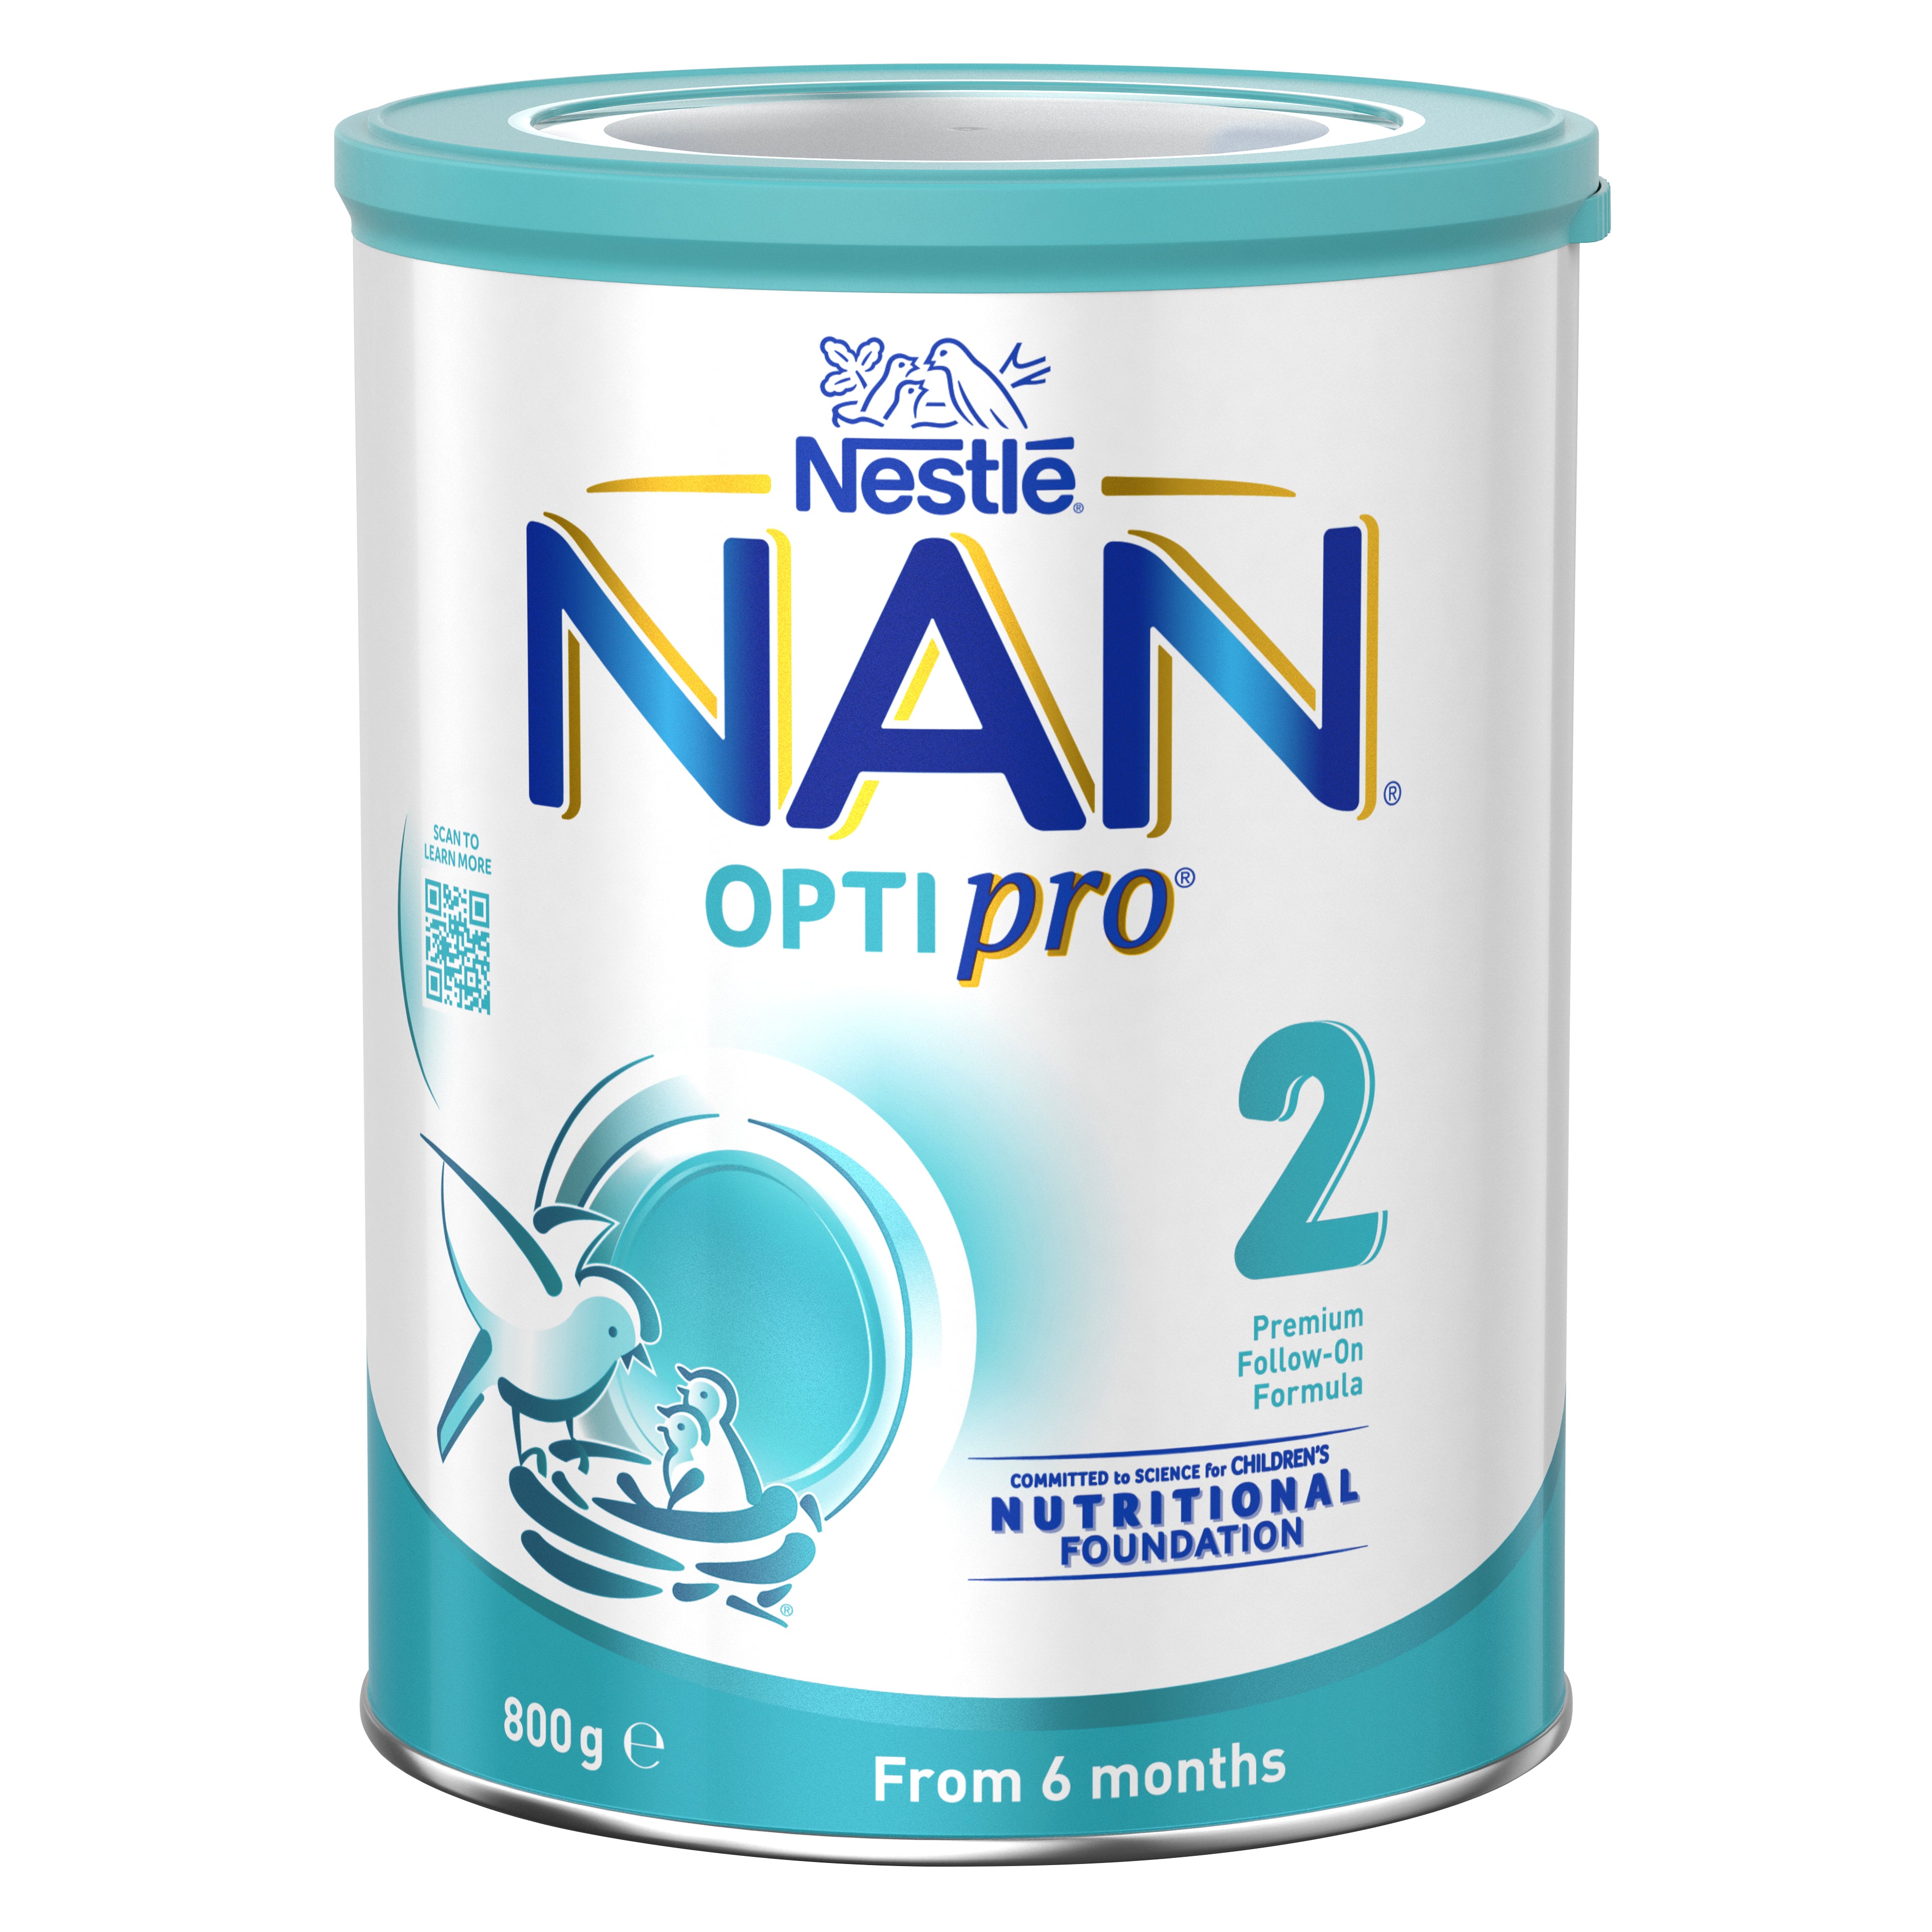 Nan Optipro 2 Leche 1.2 Kg